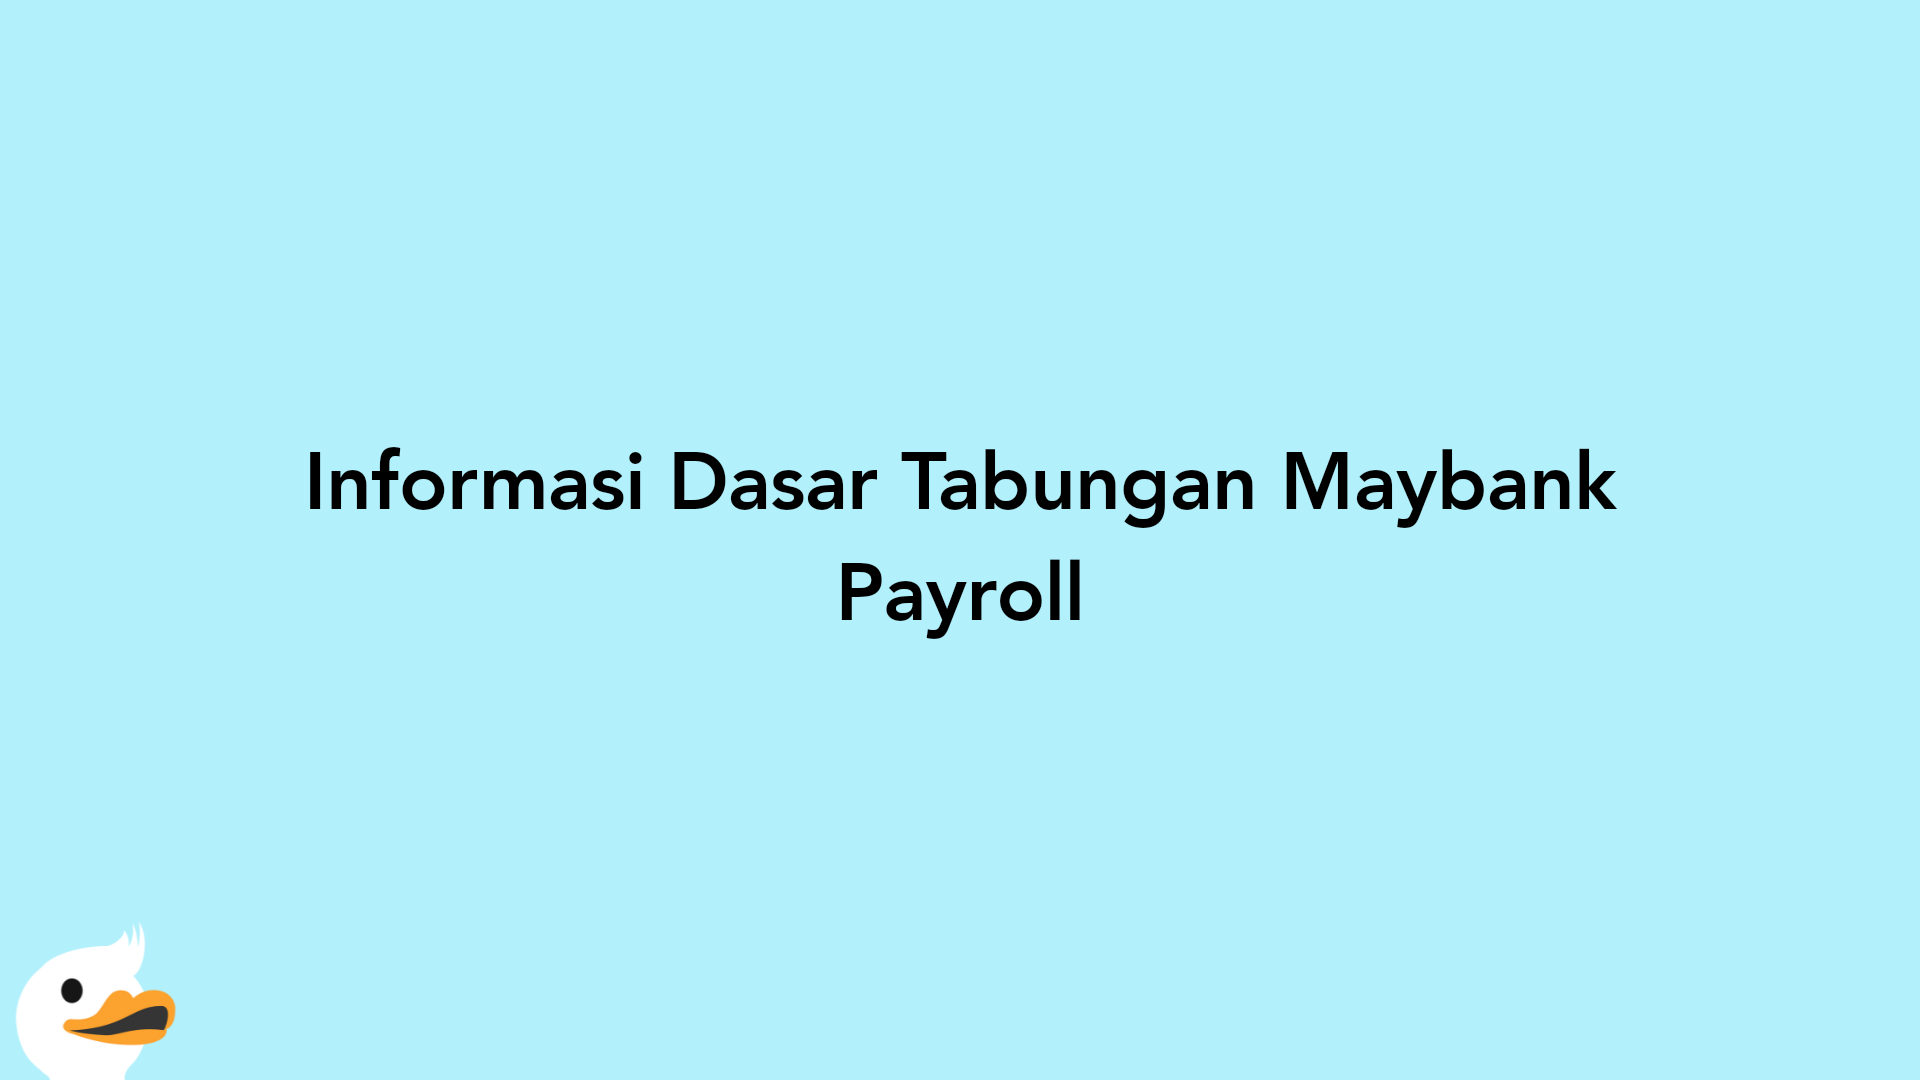 Informasi Dasar Tabungan Maybank Payroll